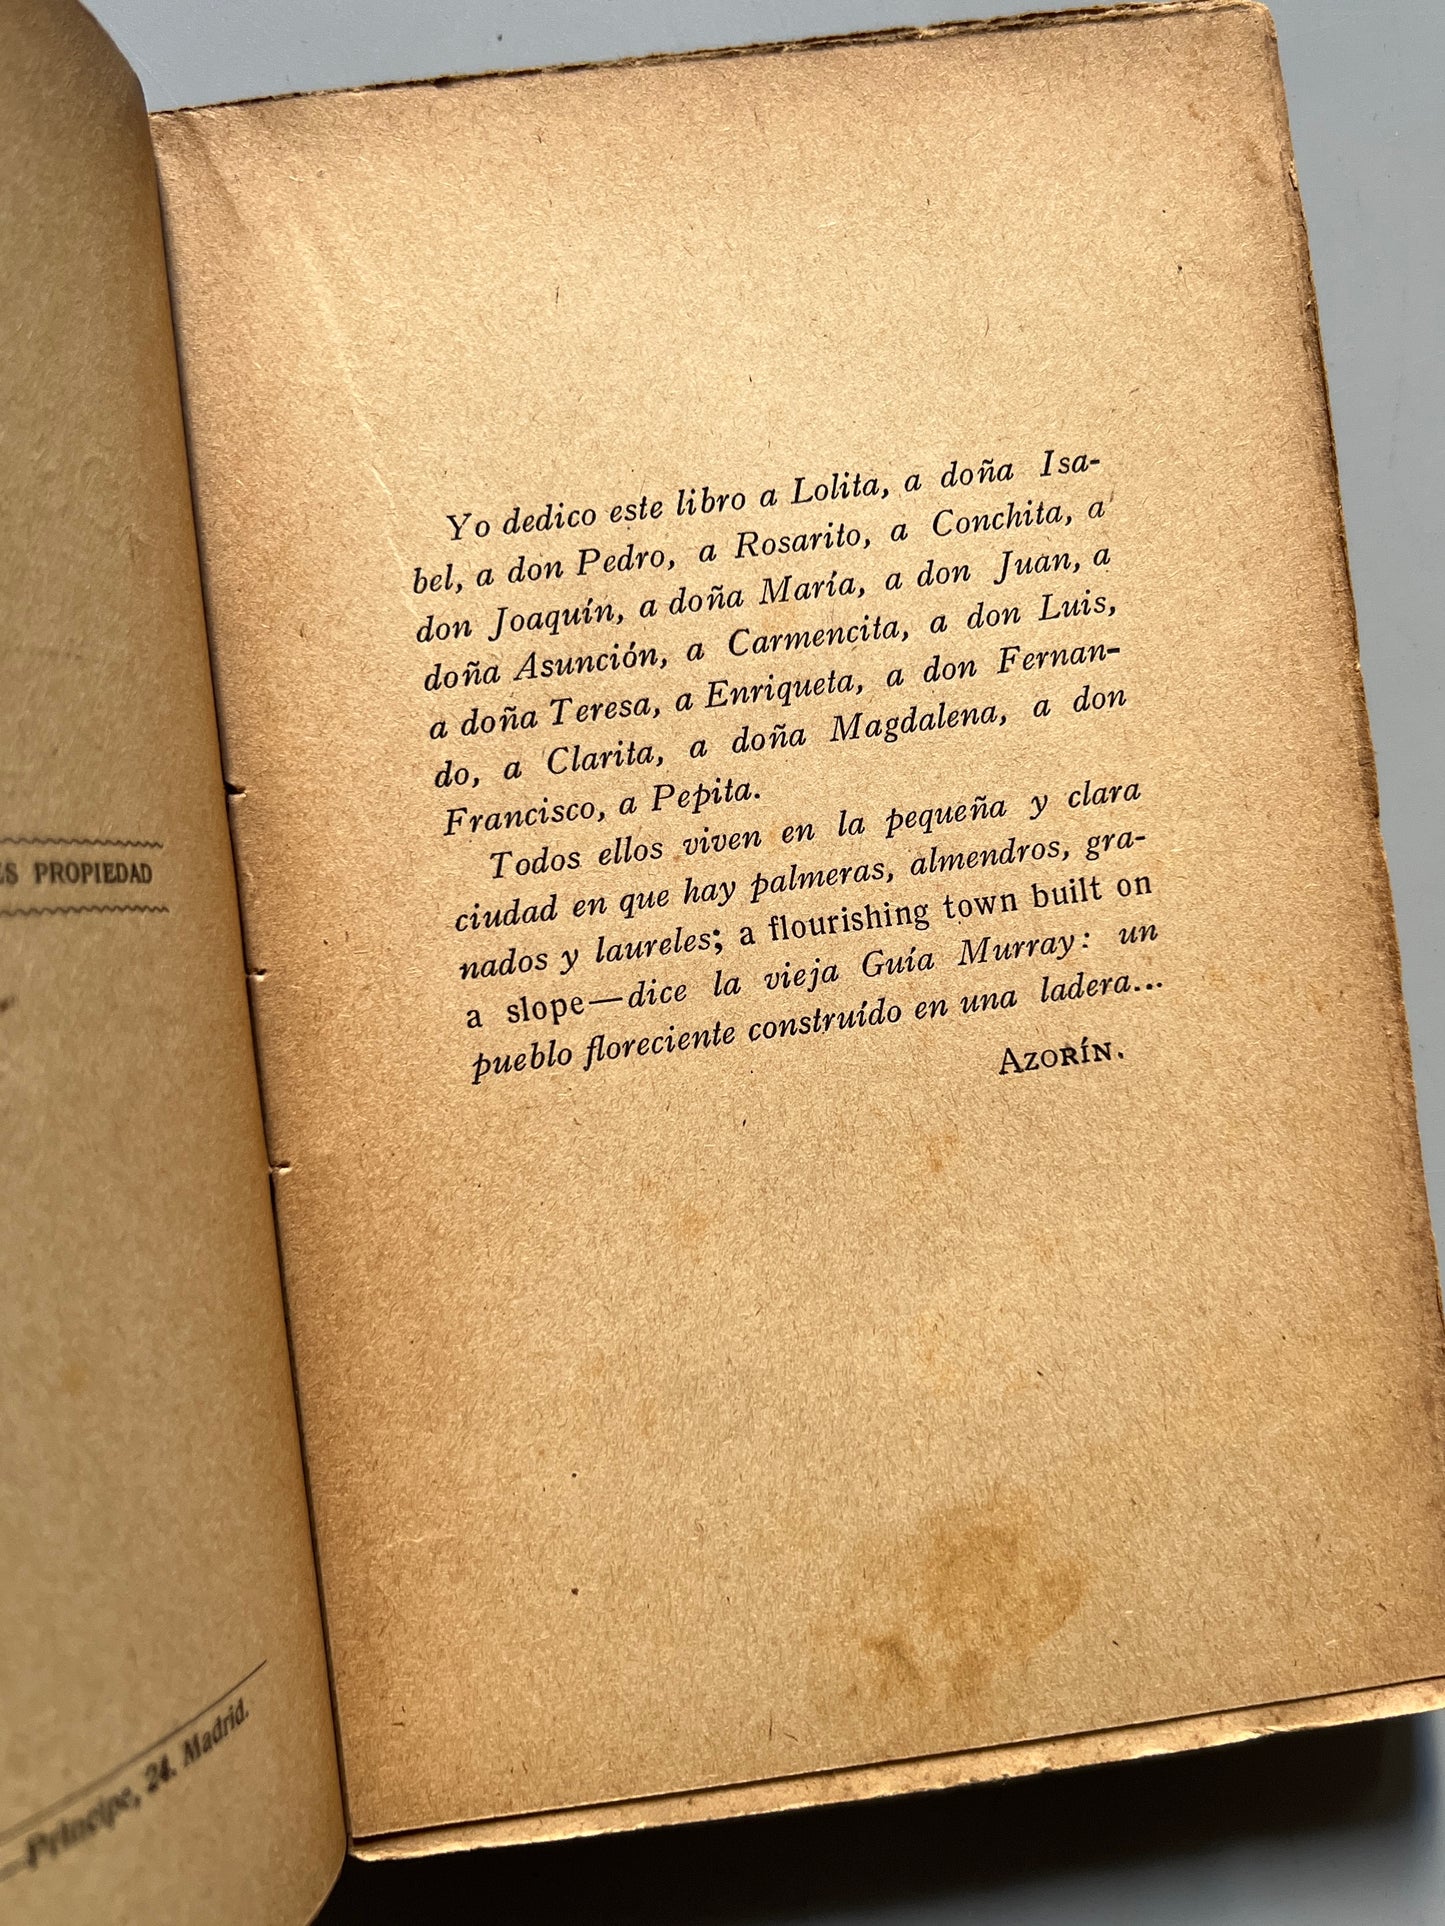 Los pueblos (ensayos sobre la vida provinciana), Azorín - Editorial Renacimiento, ca. 1920